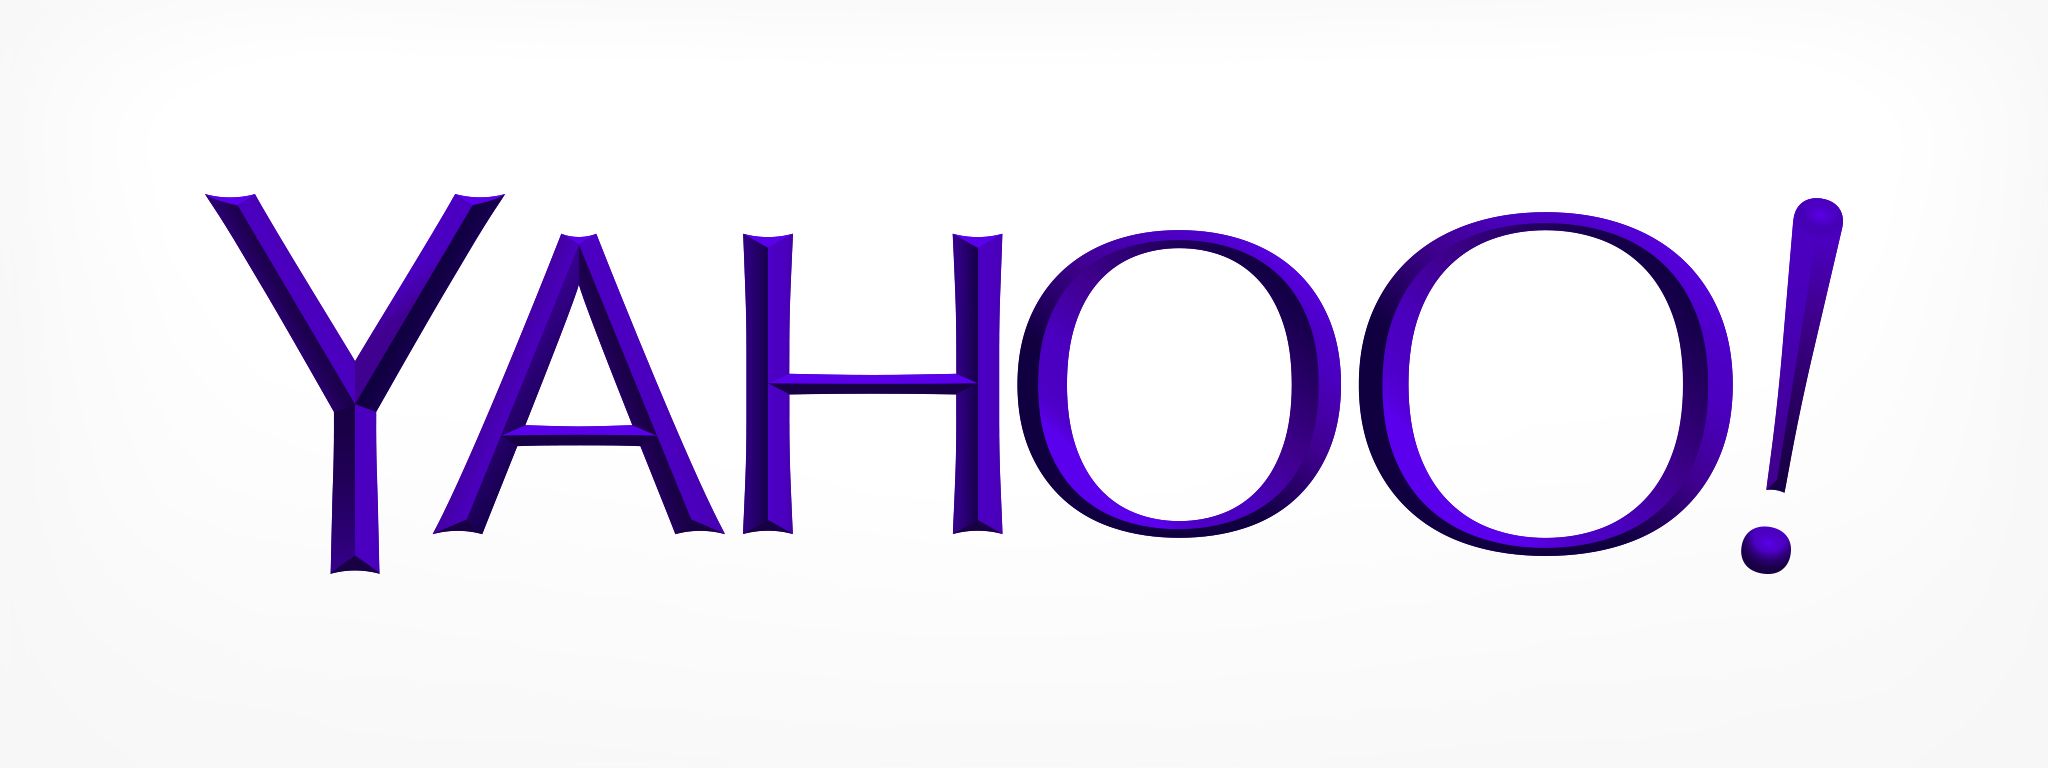 Yahoo Clipart - Tumundografico